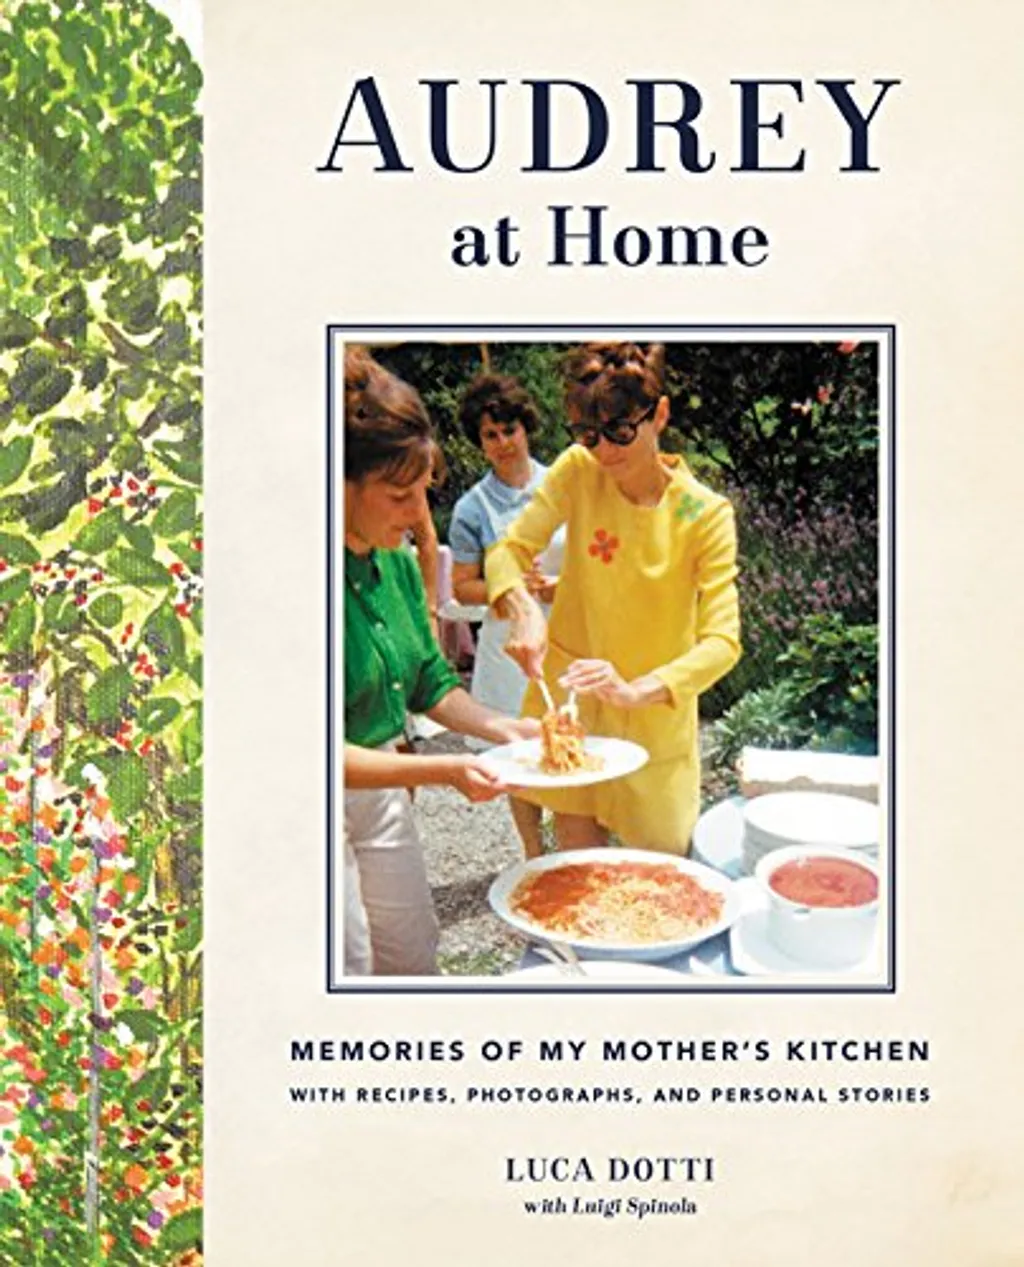 Audrey Hepburn szakácskönyv, Audrey at Home 